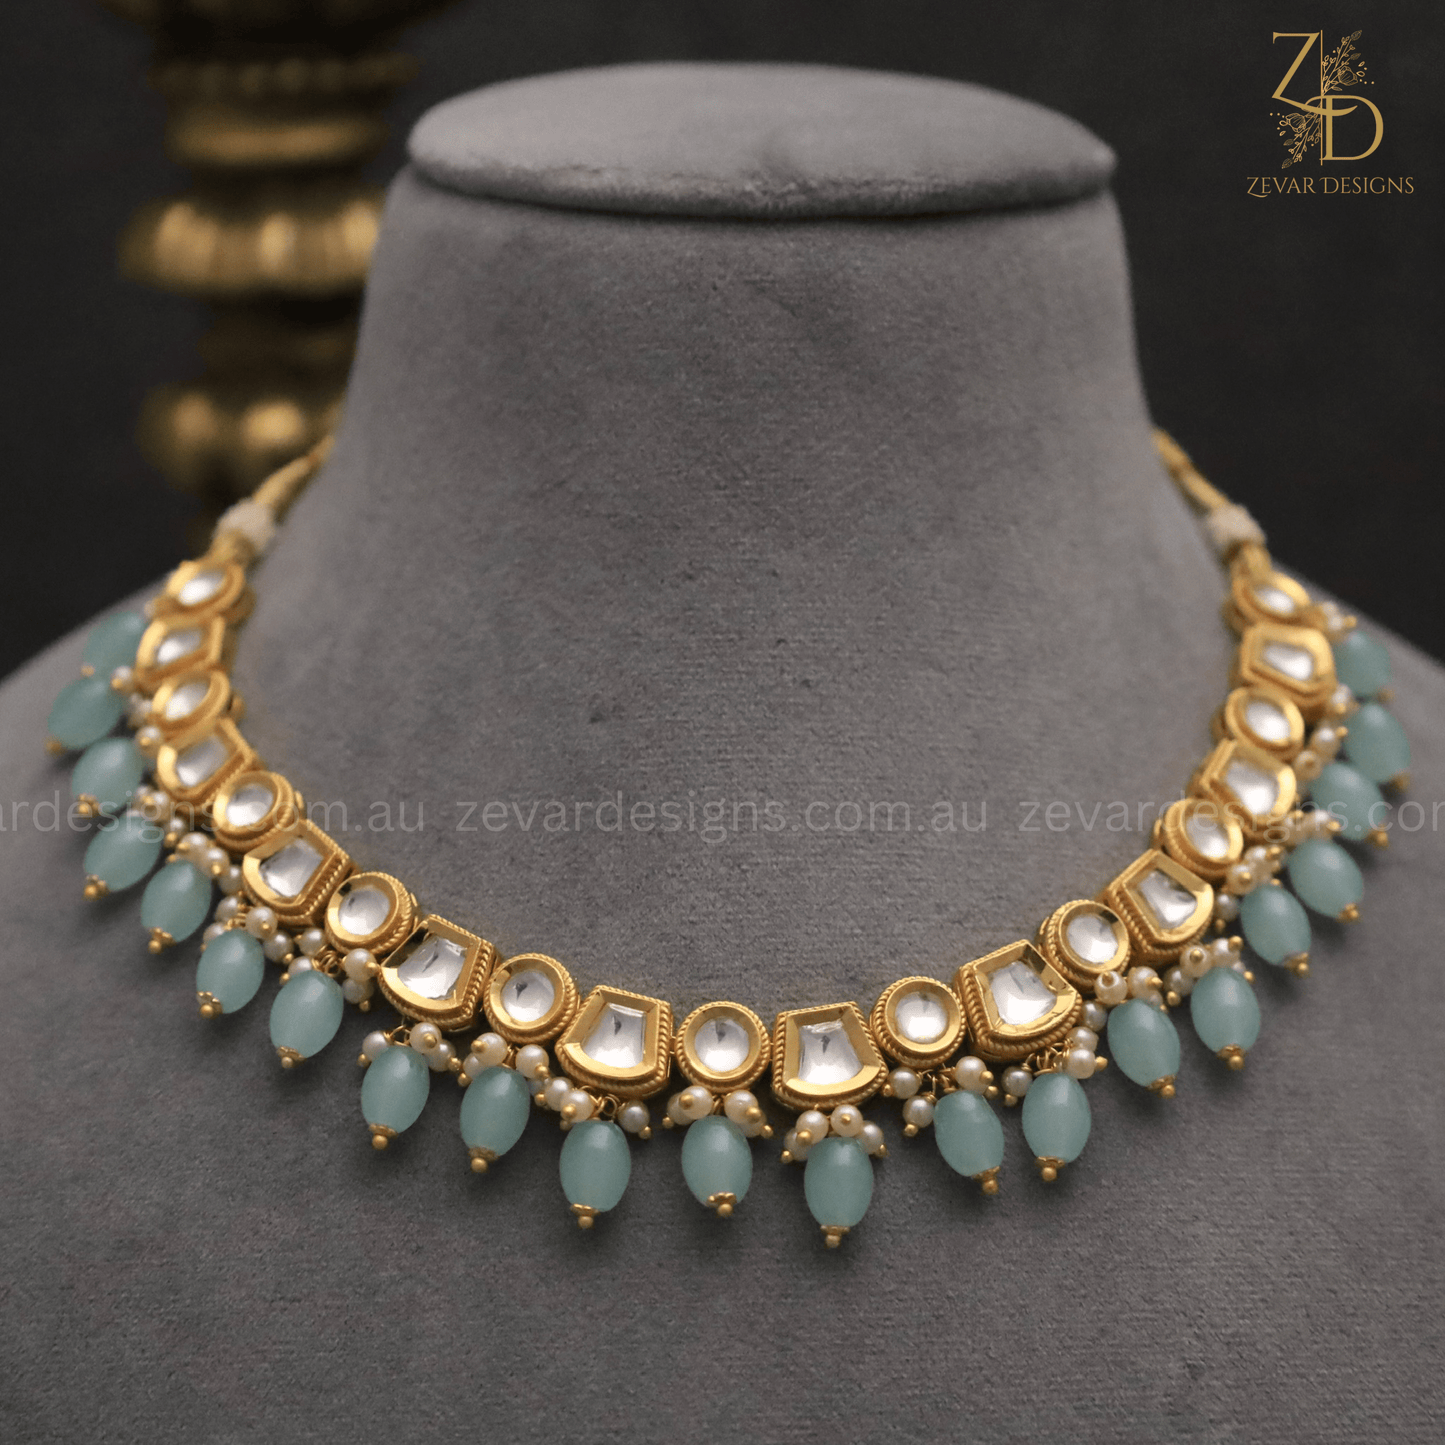 Zevar Designs Necklace Sets Gold Plated Lightweight Polki Necklace Set - Ocean Blue